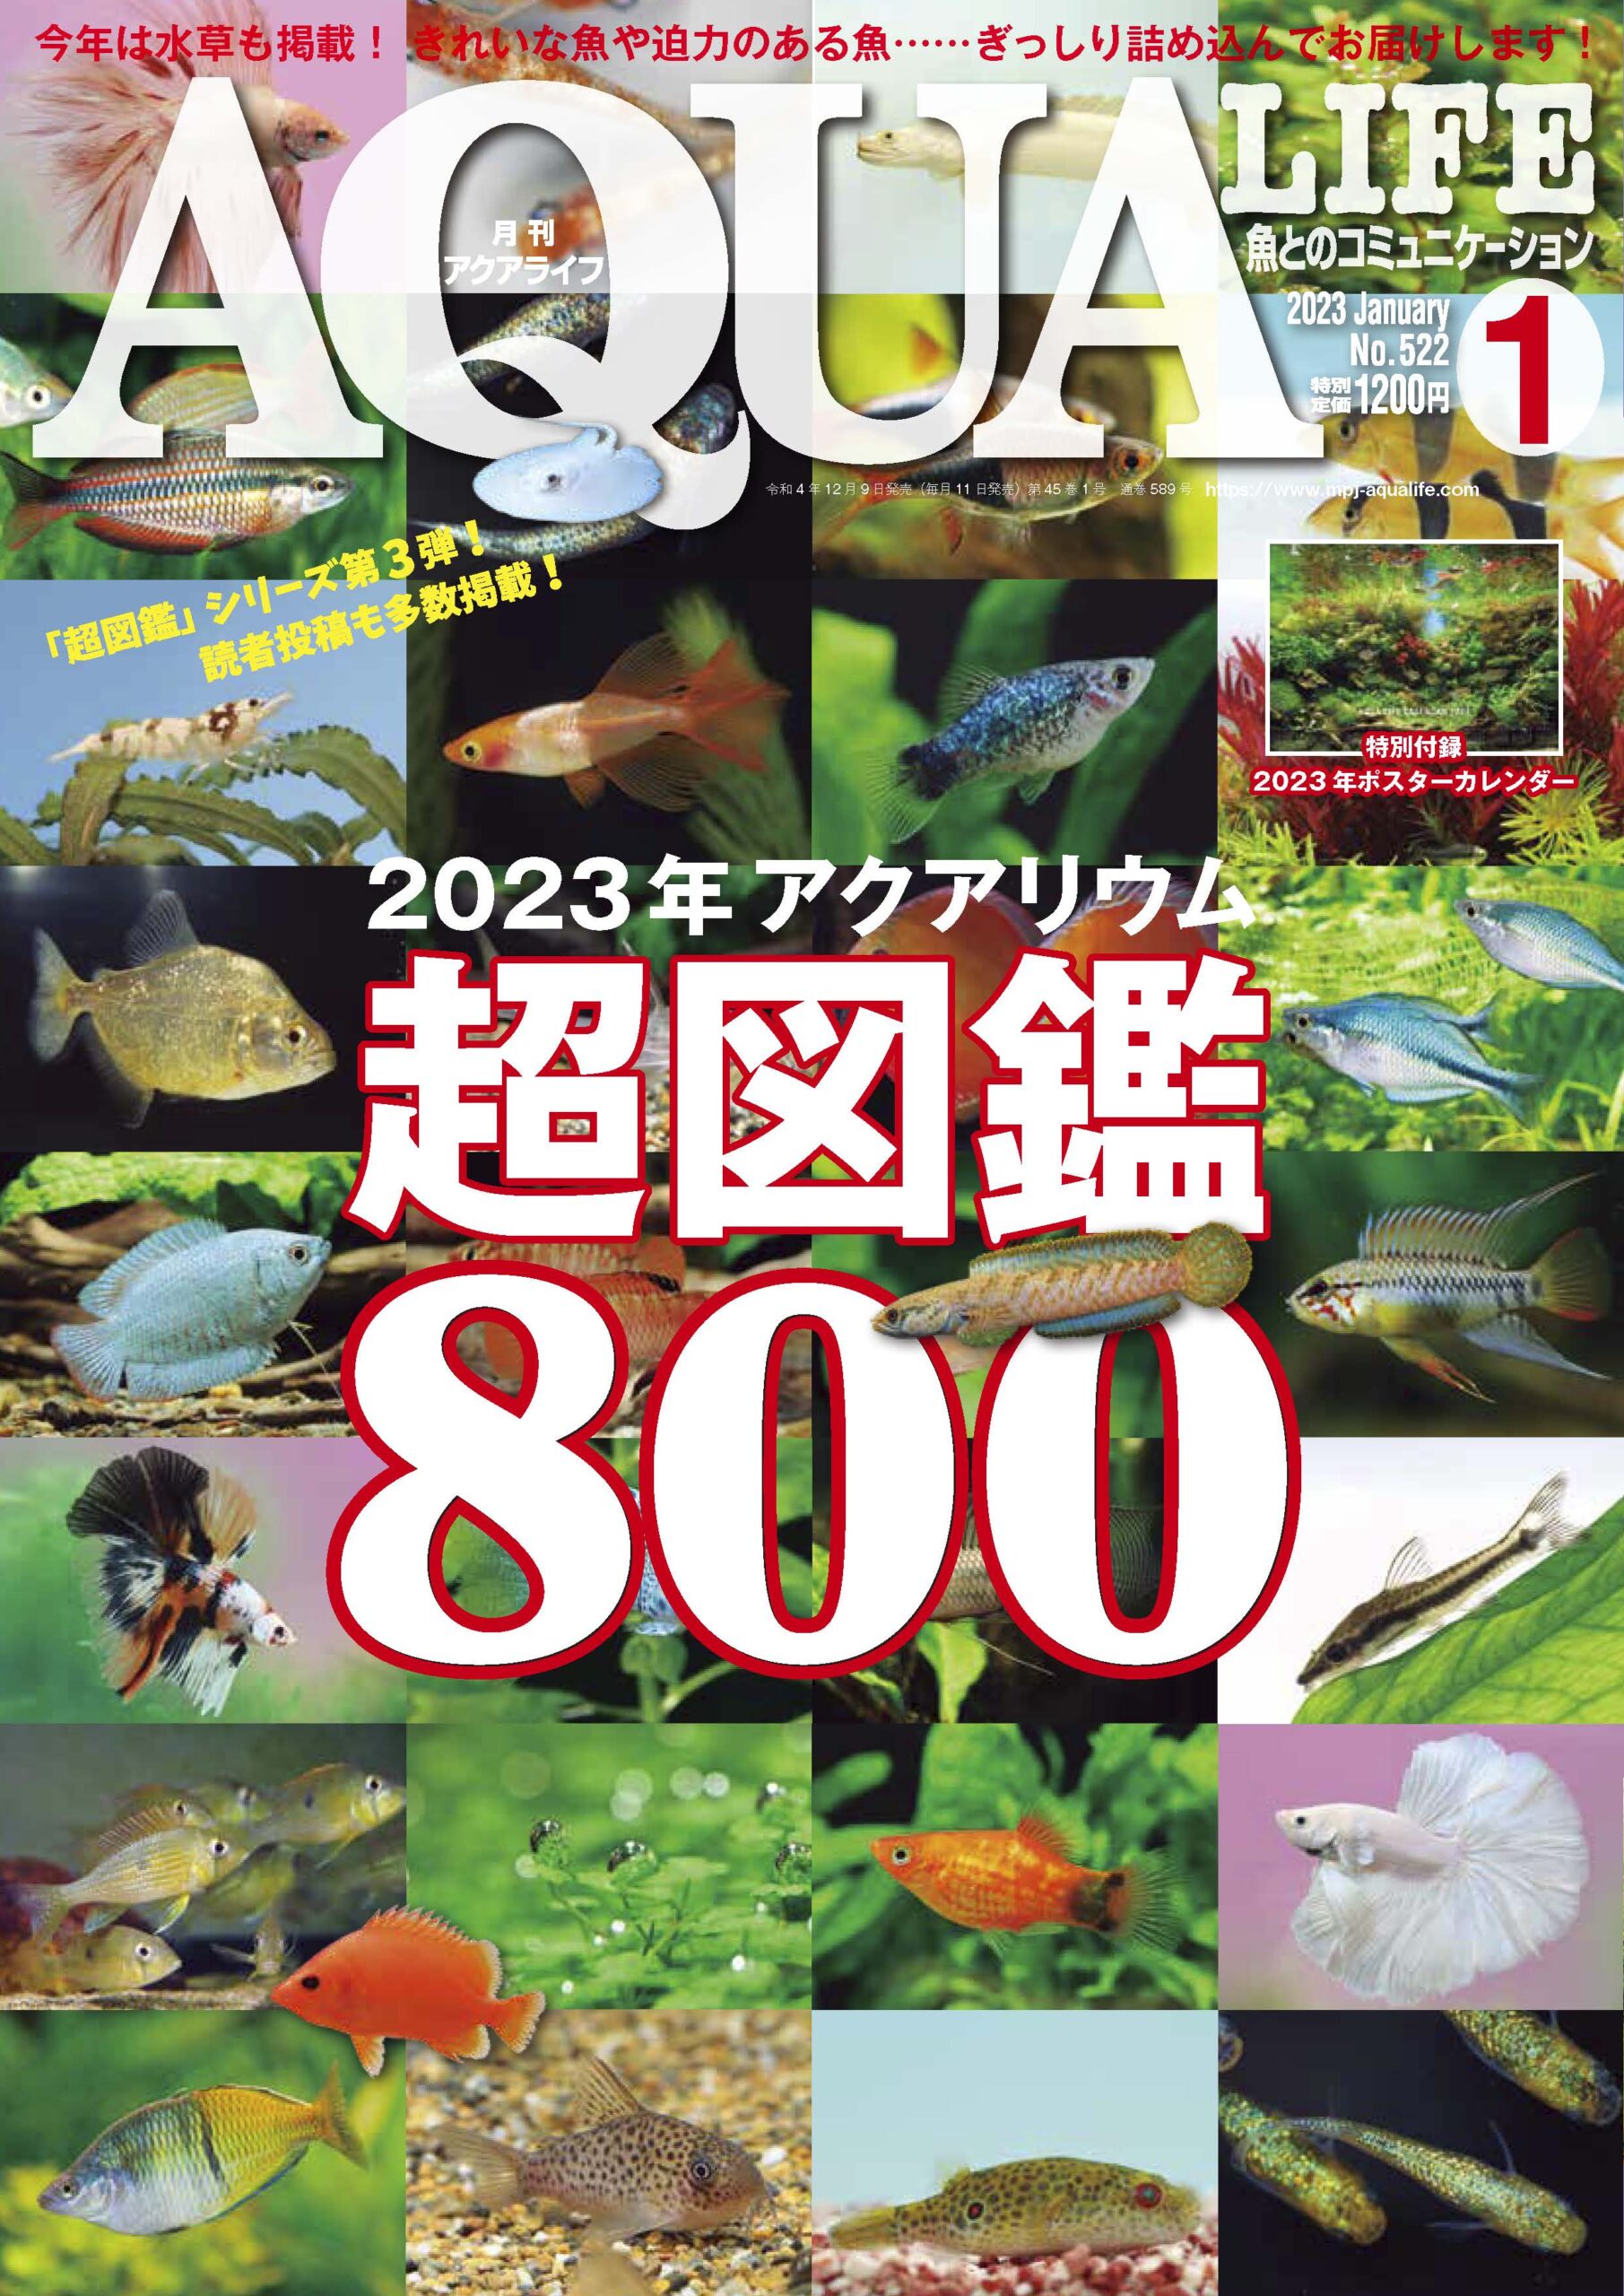 総合福袋 アクアライフ 雑誌 月刊AQUALIFE 2005年3月 No308